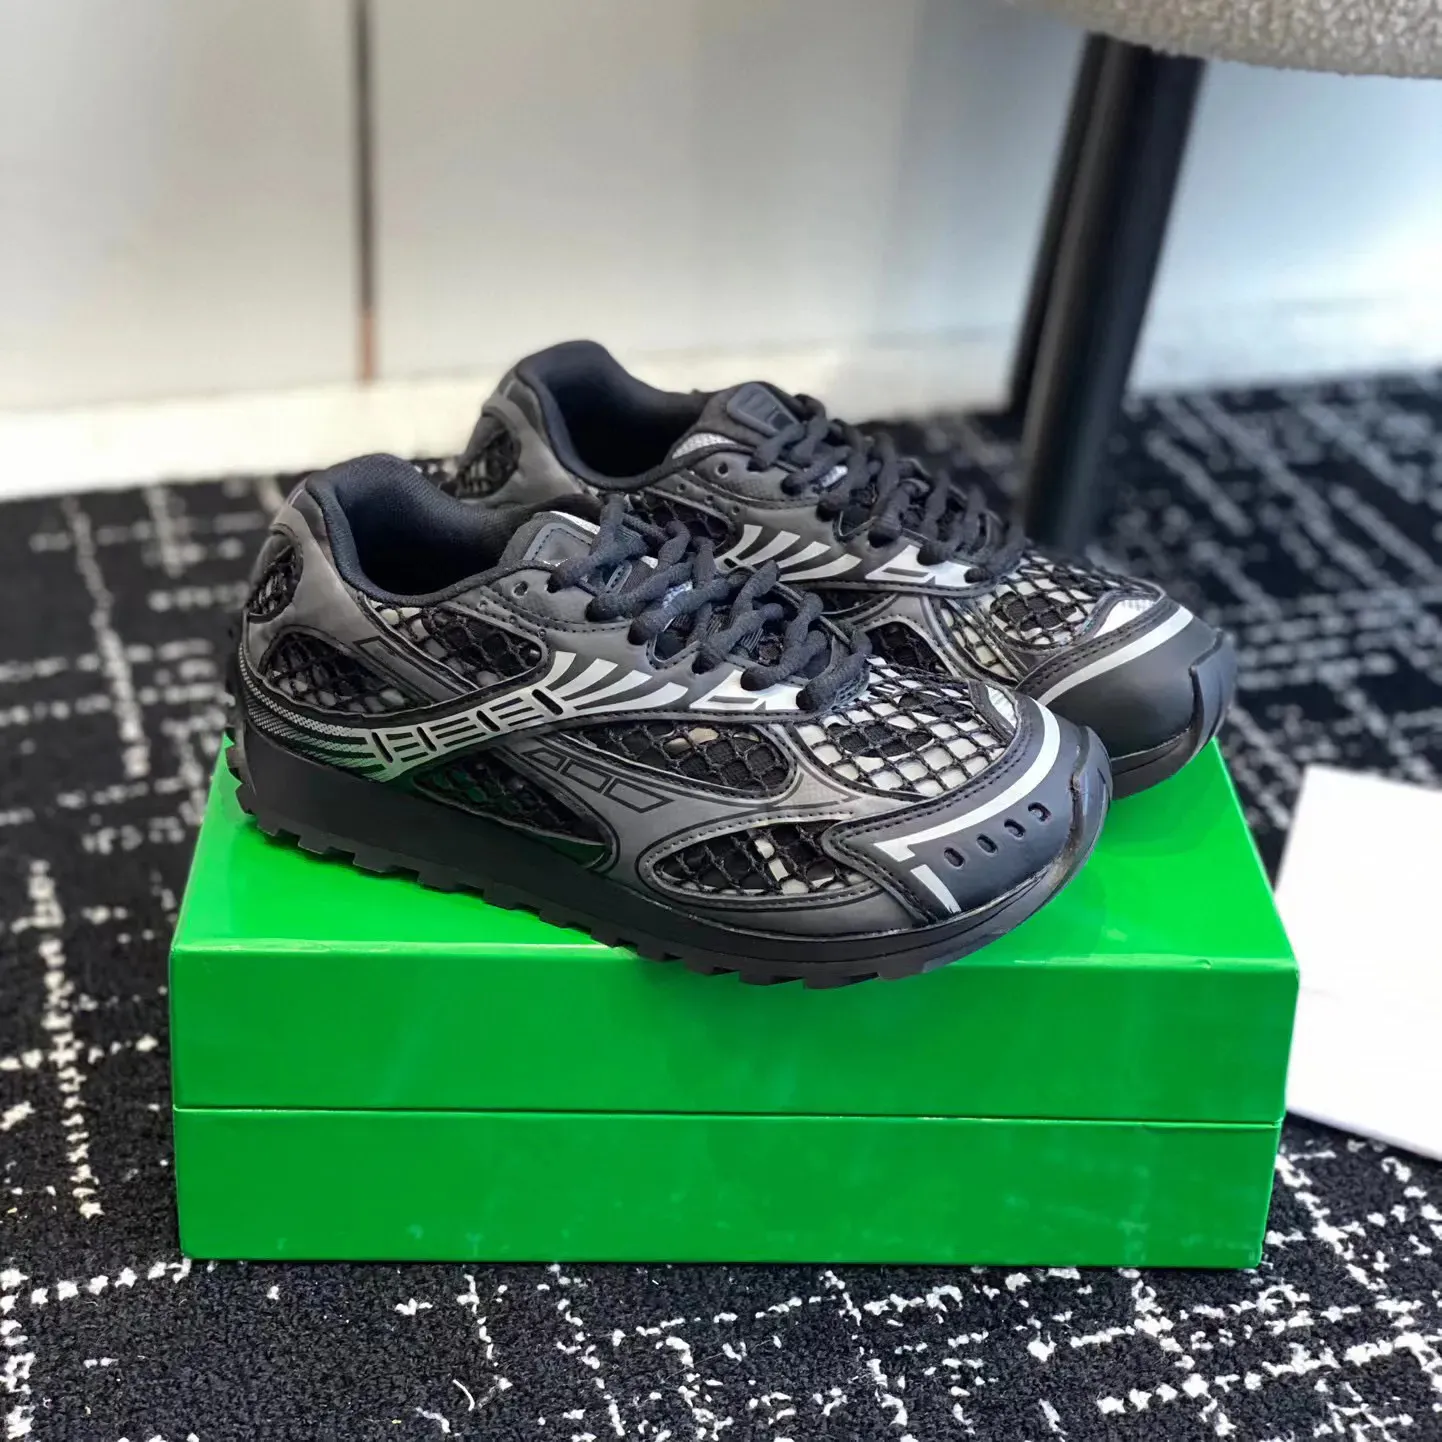 Лучшие дизайнерские спортивные обувь Orbit Sports Designer Shoes Slip Prostaint Casual Shoes с легкими технологиями.